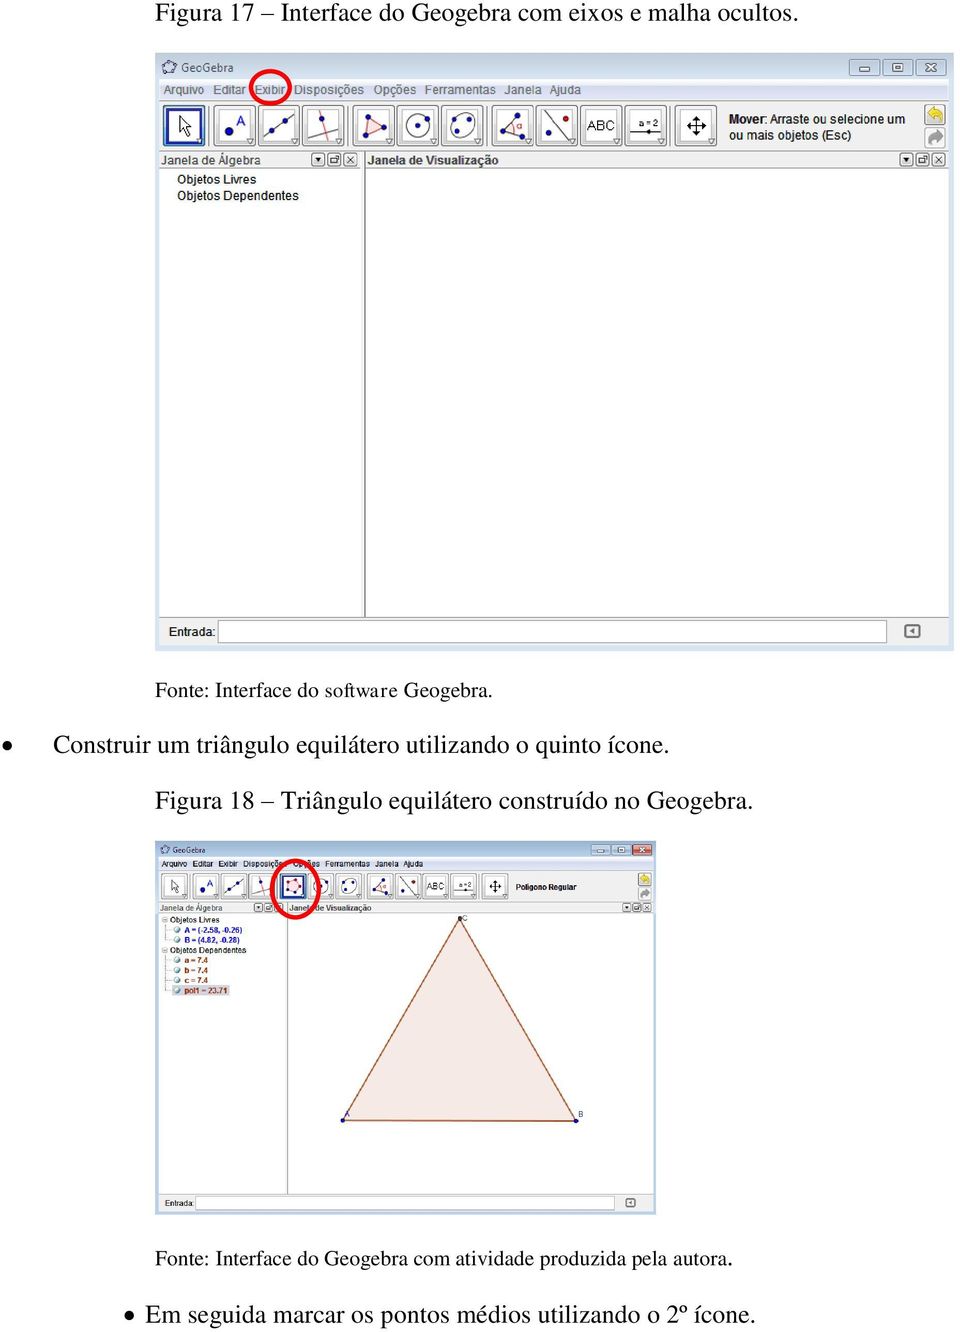 Construir um triângulo equilátero utilizando o quinto ícone.